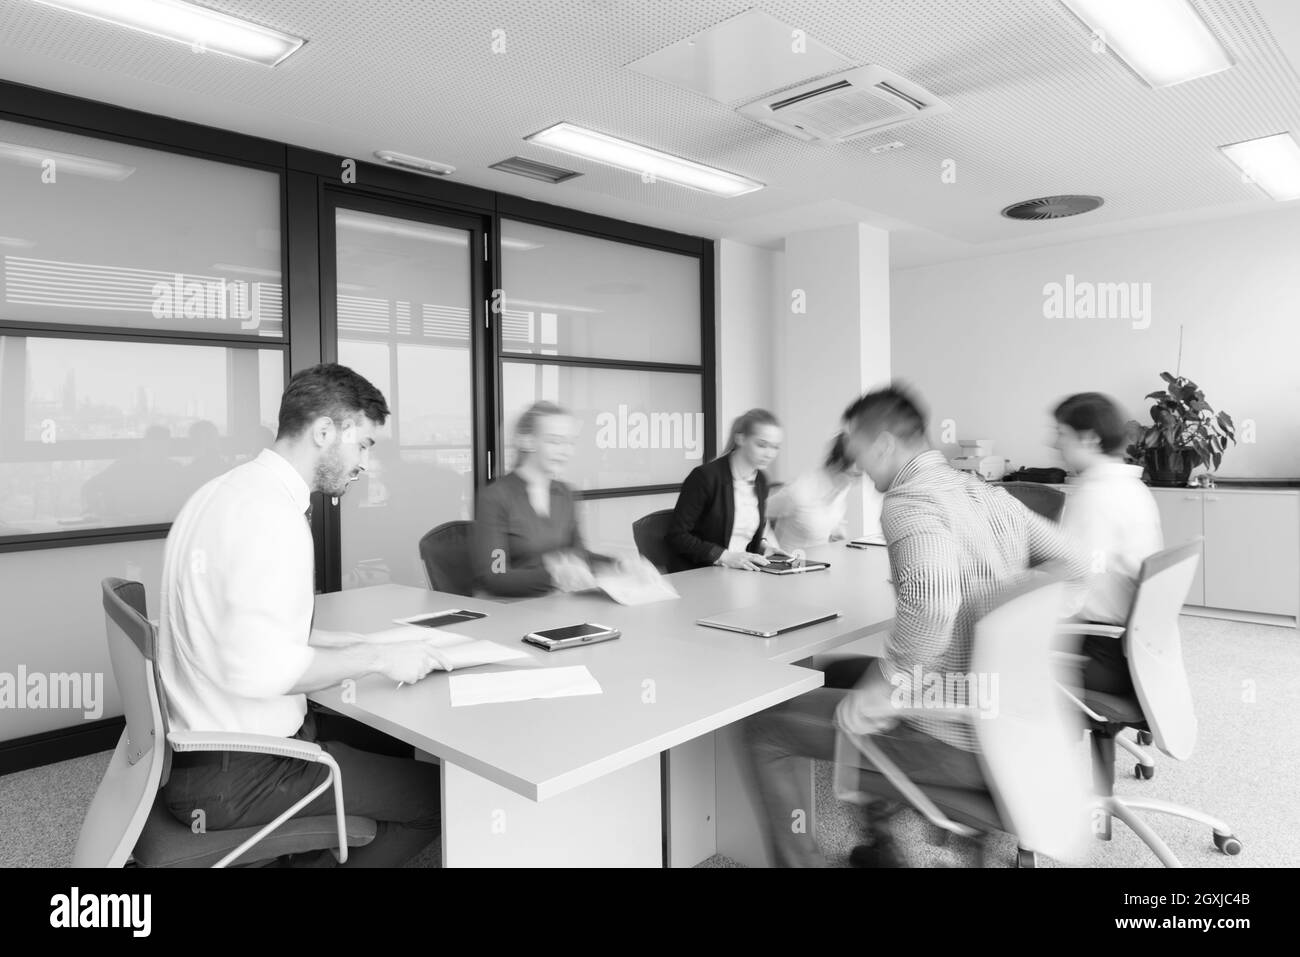 Les jeunes gens créatifs de démarrage d'entreprise groupe dans une salle de réunion avec le motion blur modern office interior Banque D'Images